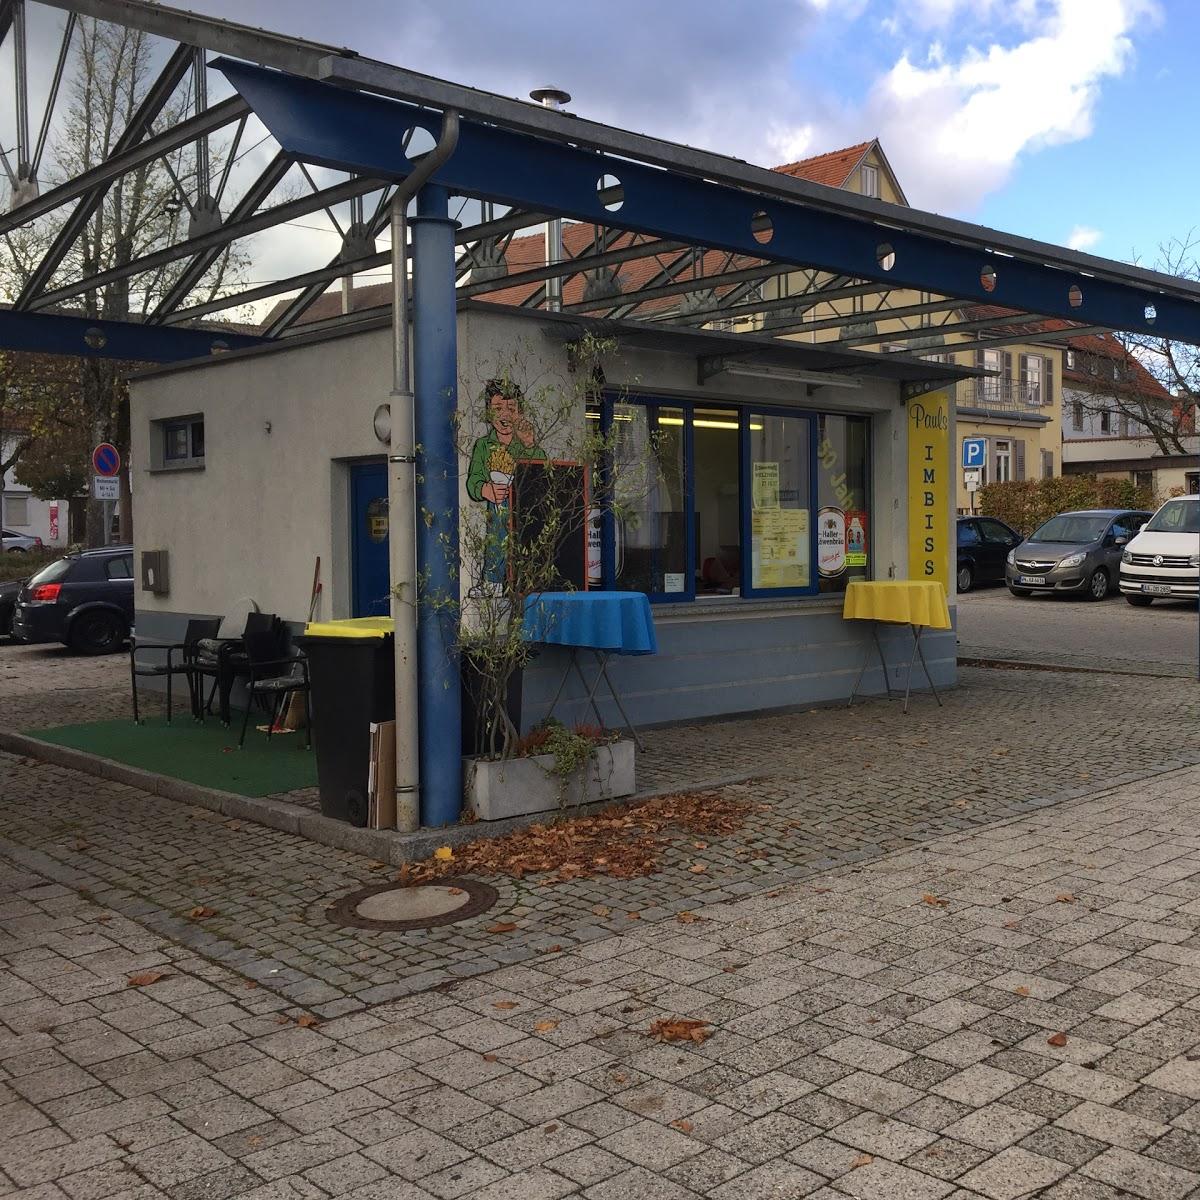 Restaurant "Pauls Imbiss" in  Welzheim